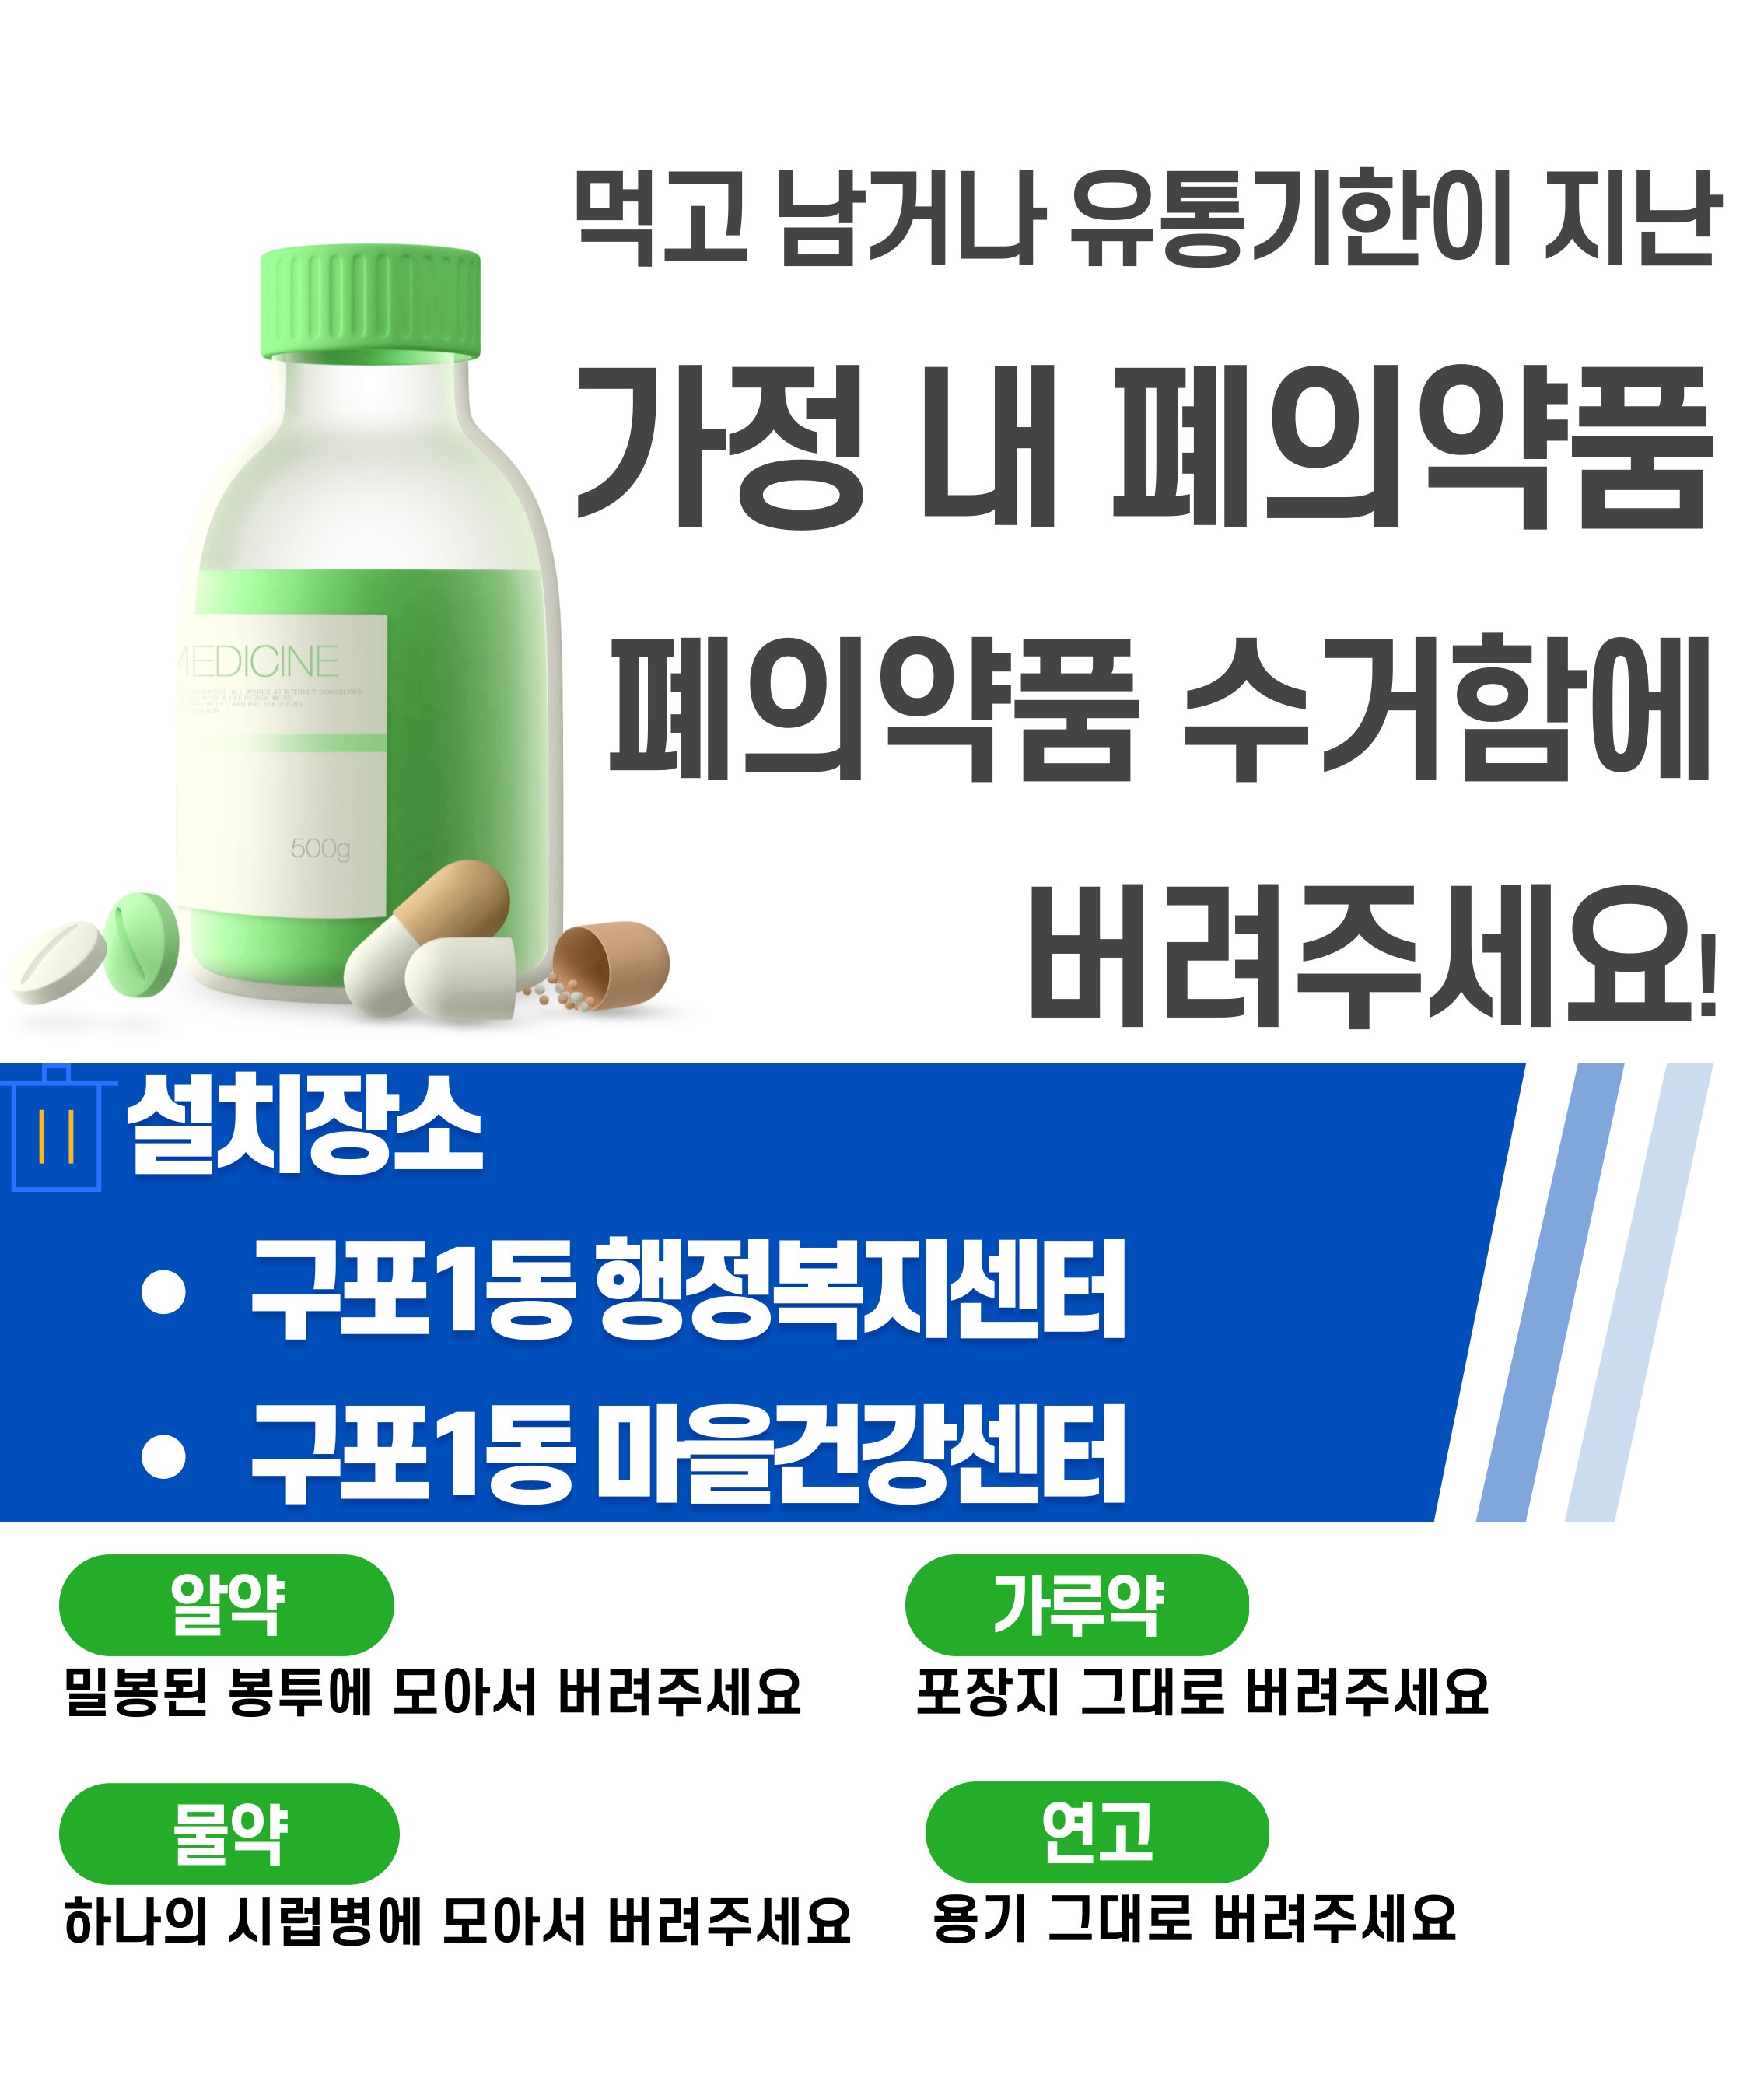 「건강하고 안전한 약 분리수거」폐의약품 전용 수거함 운영 알림